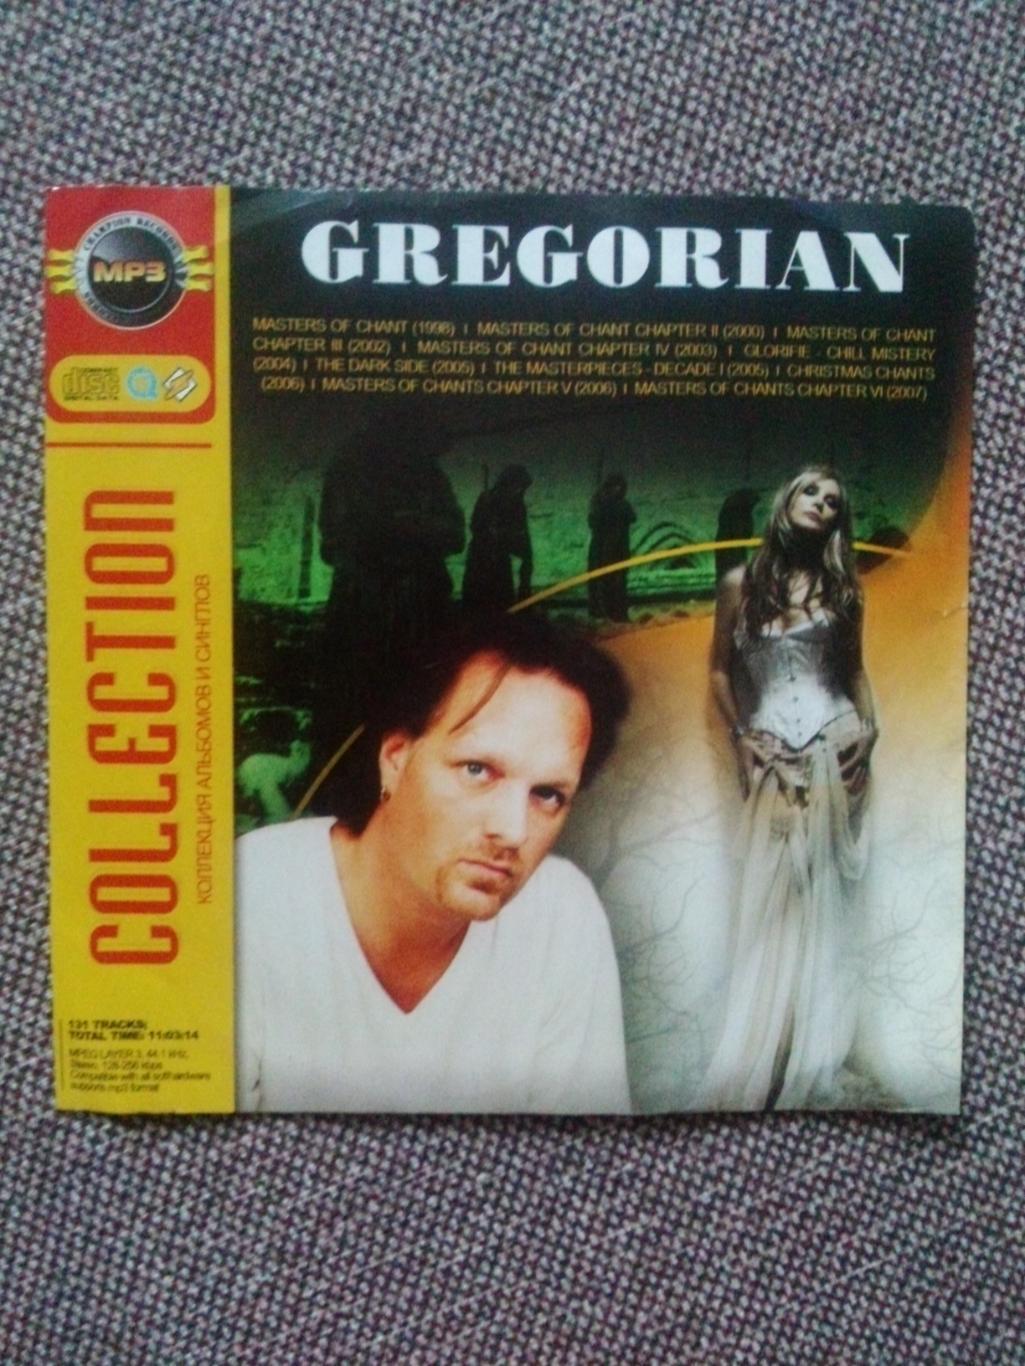 MP - 3 CD : группа Gregorian 1998 - 2007 гг. (10 альбомов) Рок - музыка